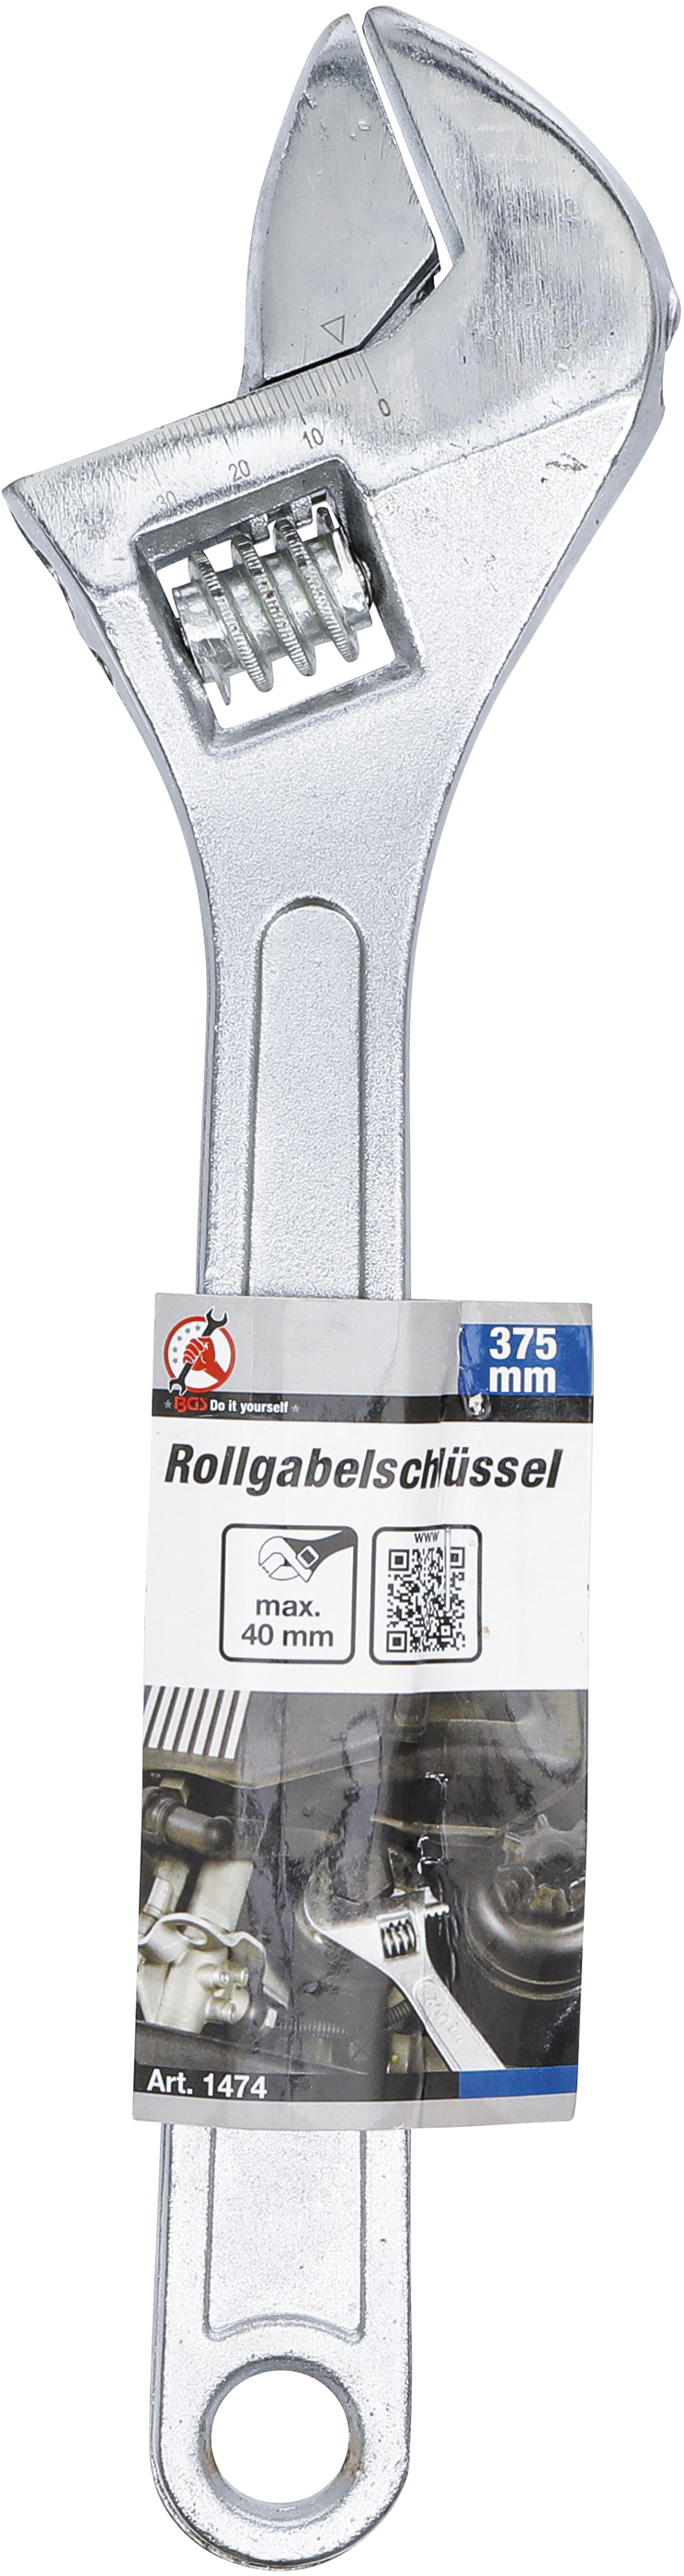 BGS Rollgabelschlüssel | 375 mm | 40 mm